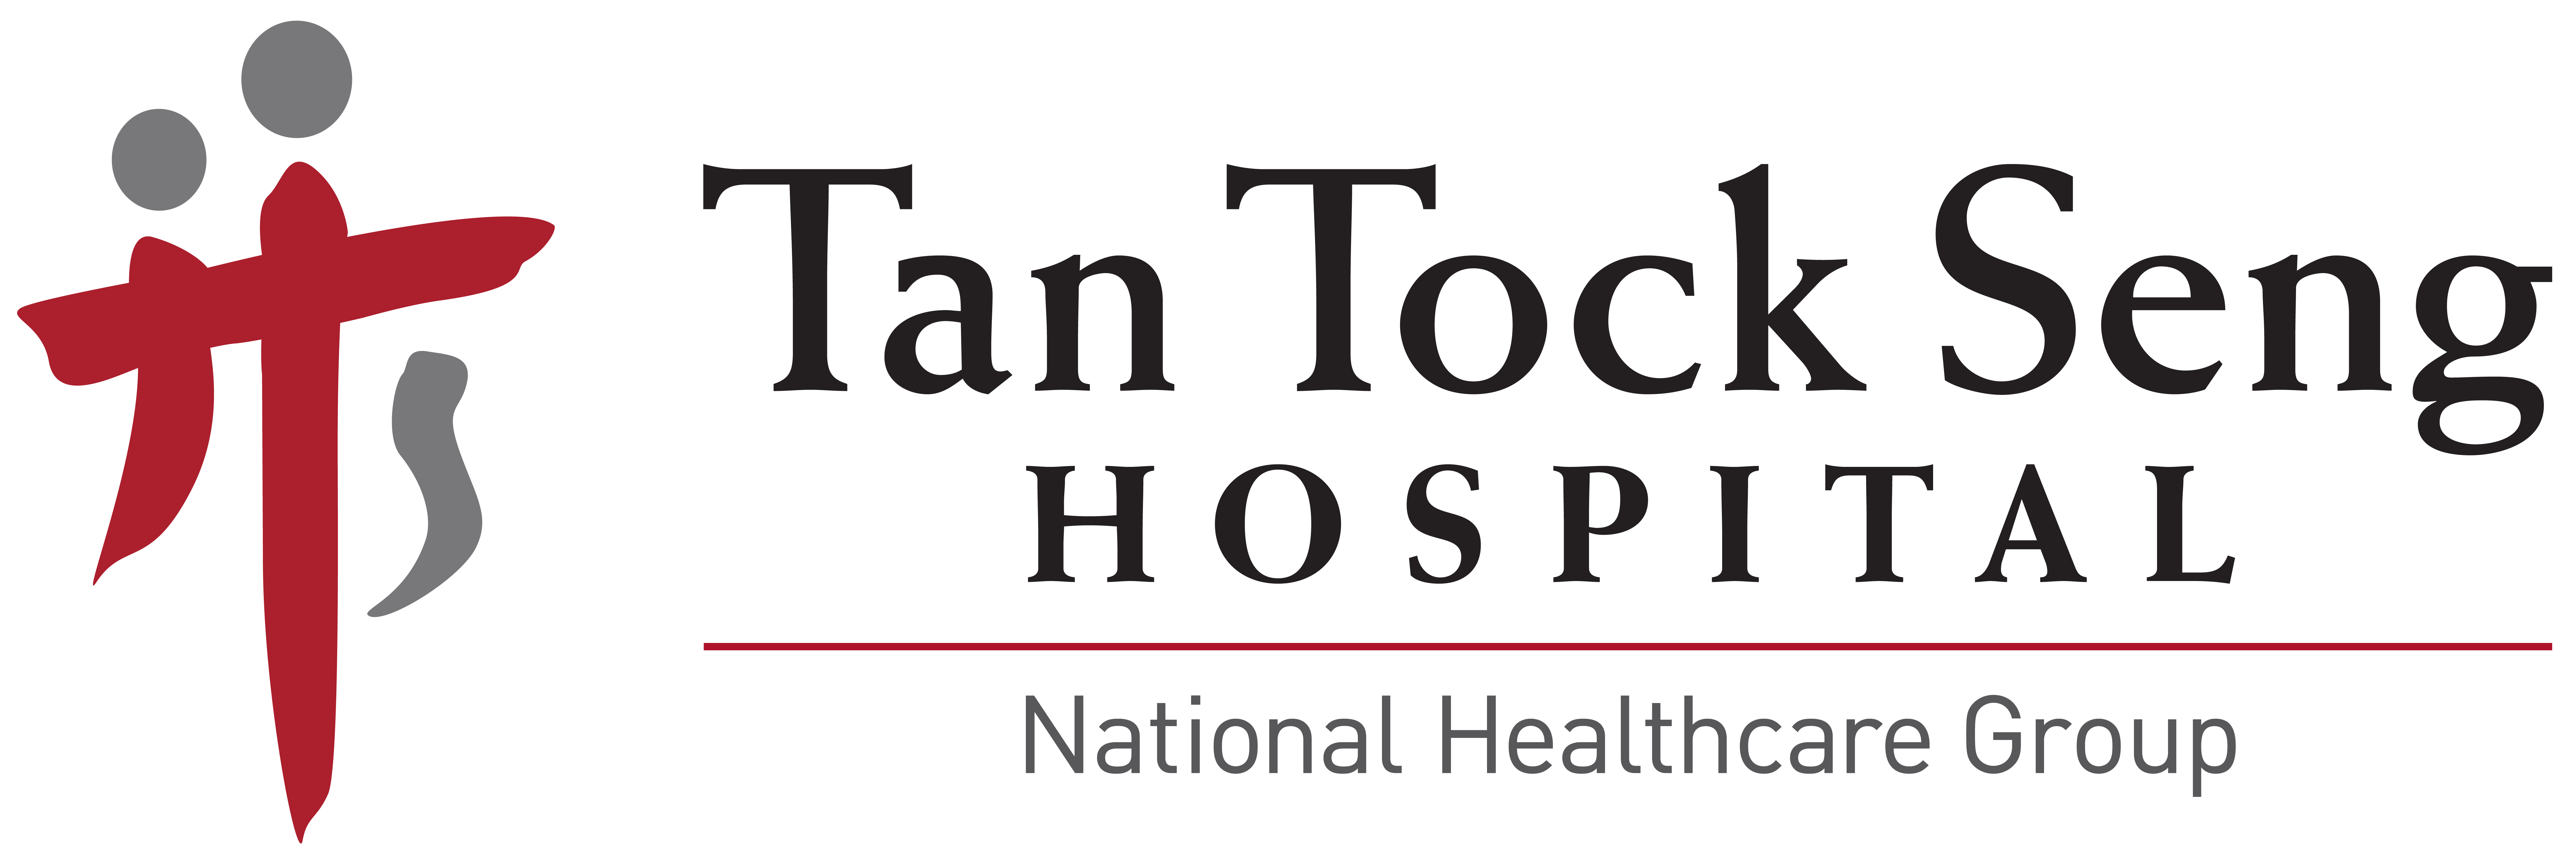 Logo of Tan Tock Seng Hospital